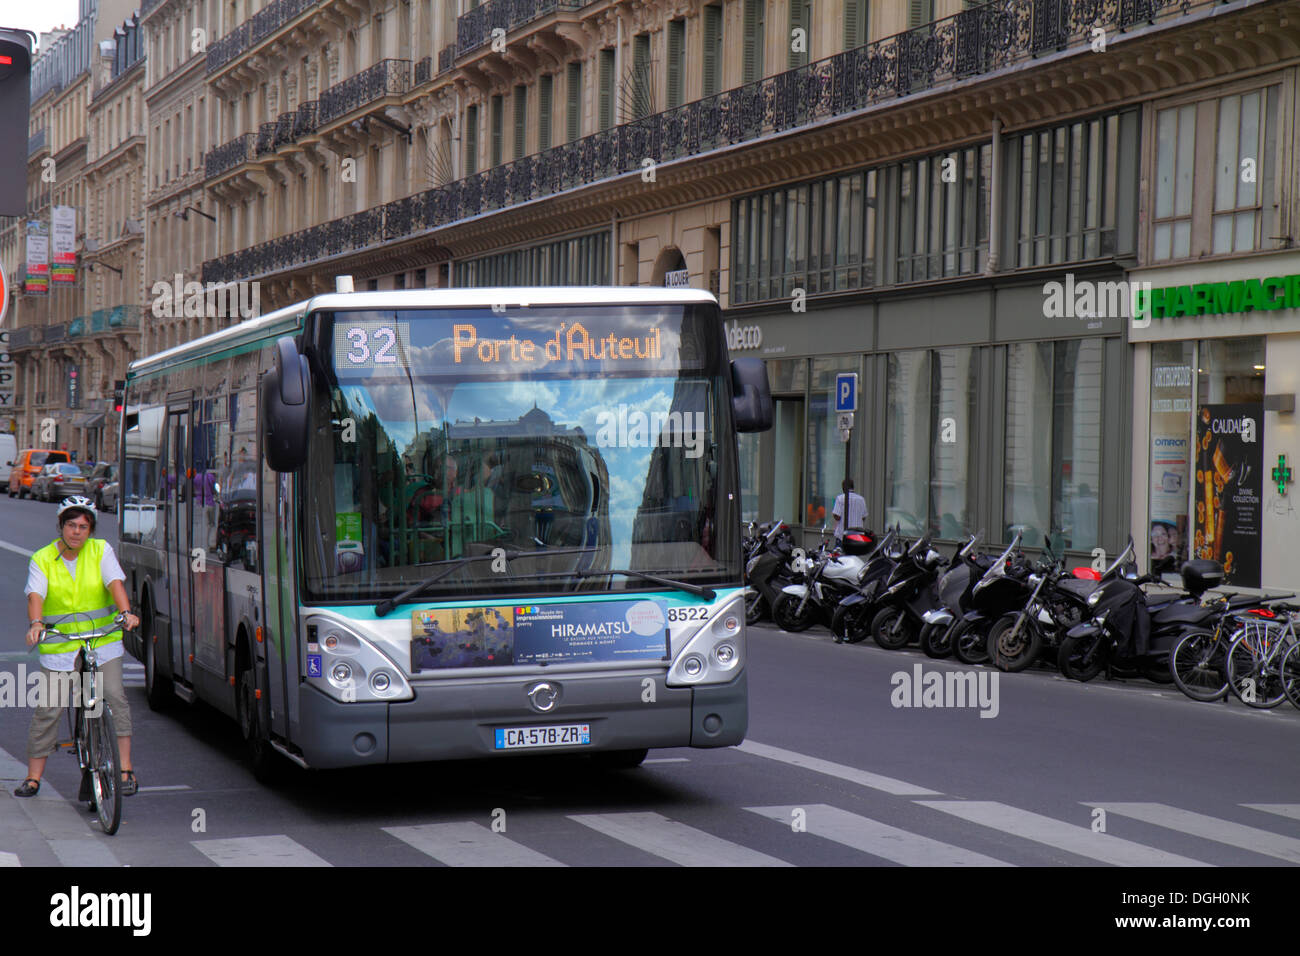 Paris France,9th arrondissement,Place d'Estienne d'Orves,Rue de Châteaudun,public bus,coach,adult,adults,woman female women,bicycle rider,biker bikers Stock Photo